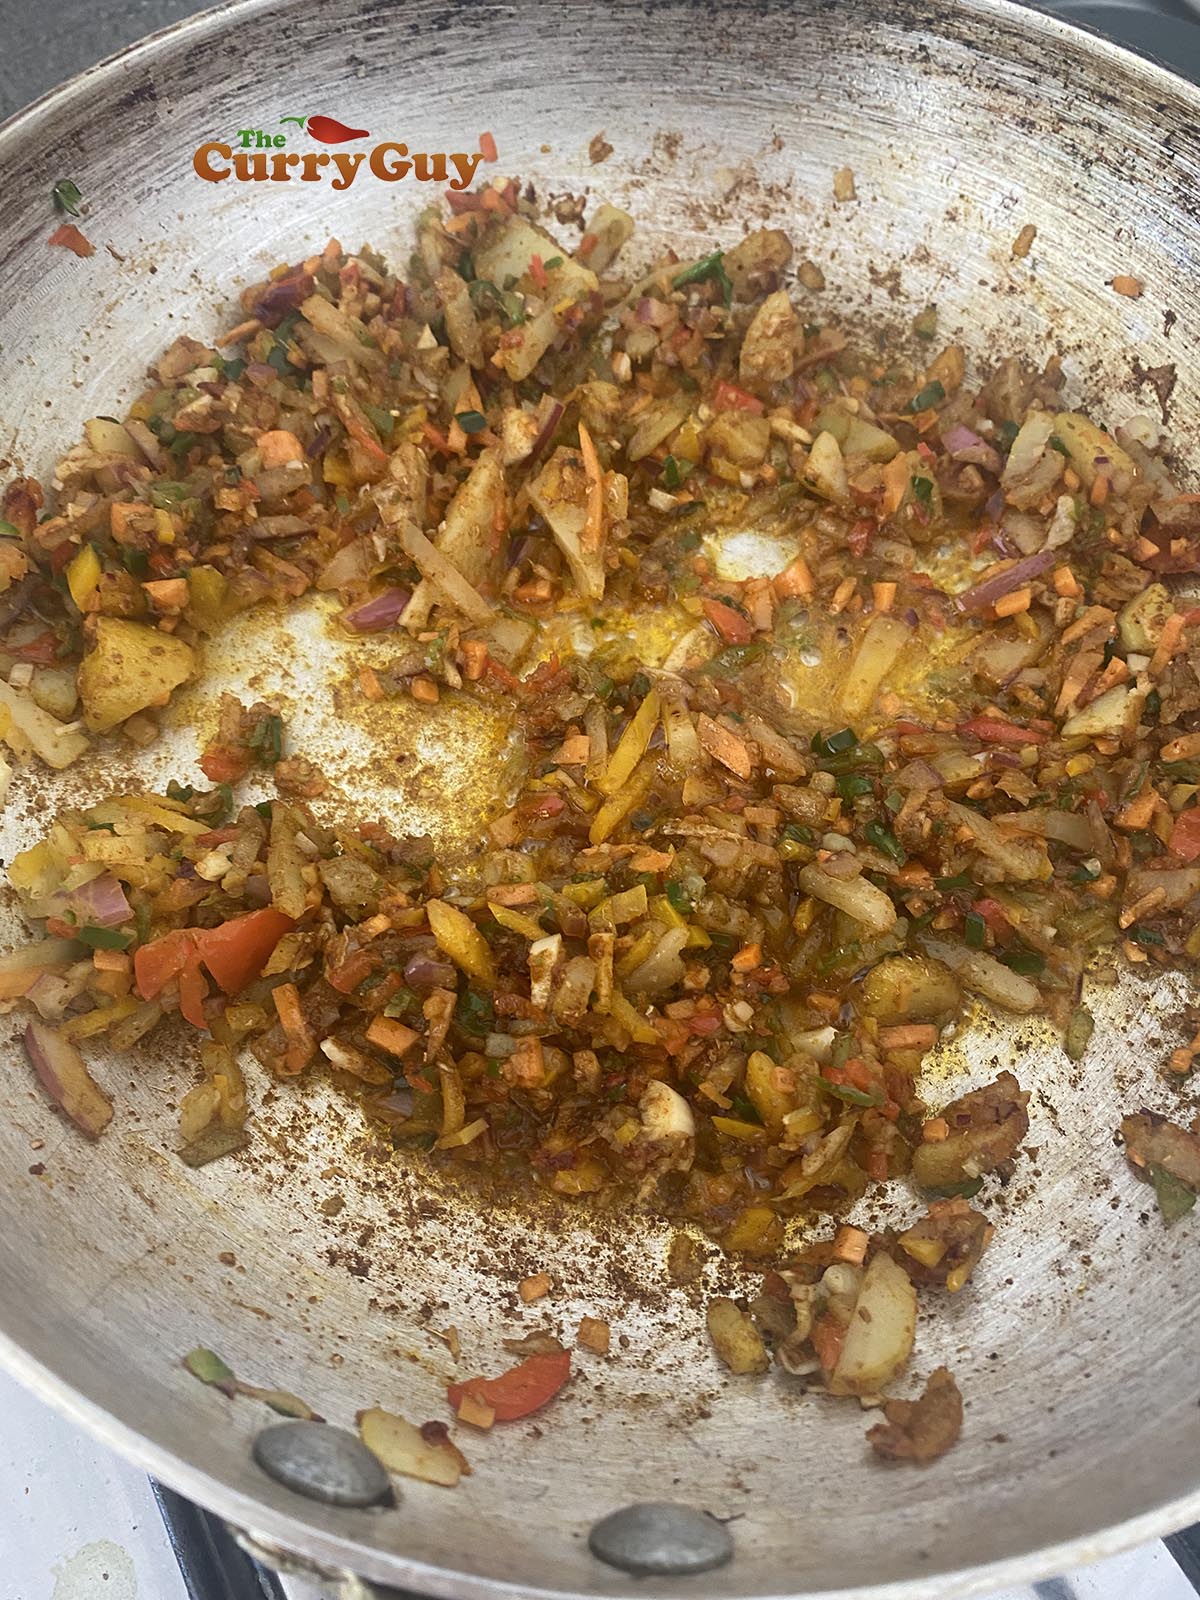 Adding ground spices